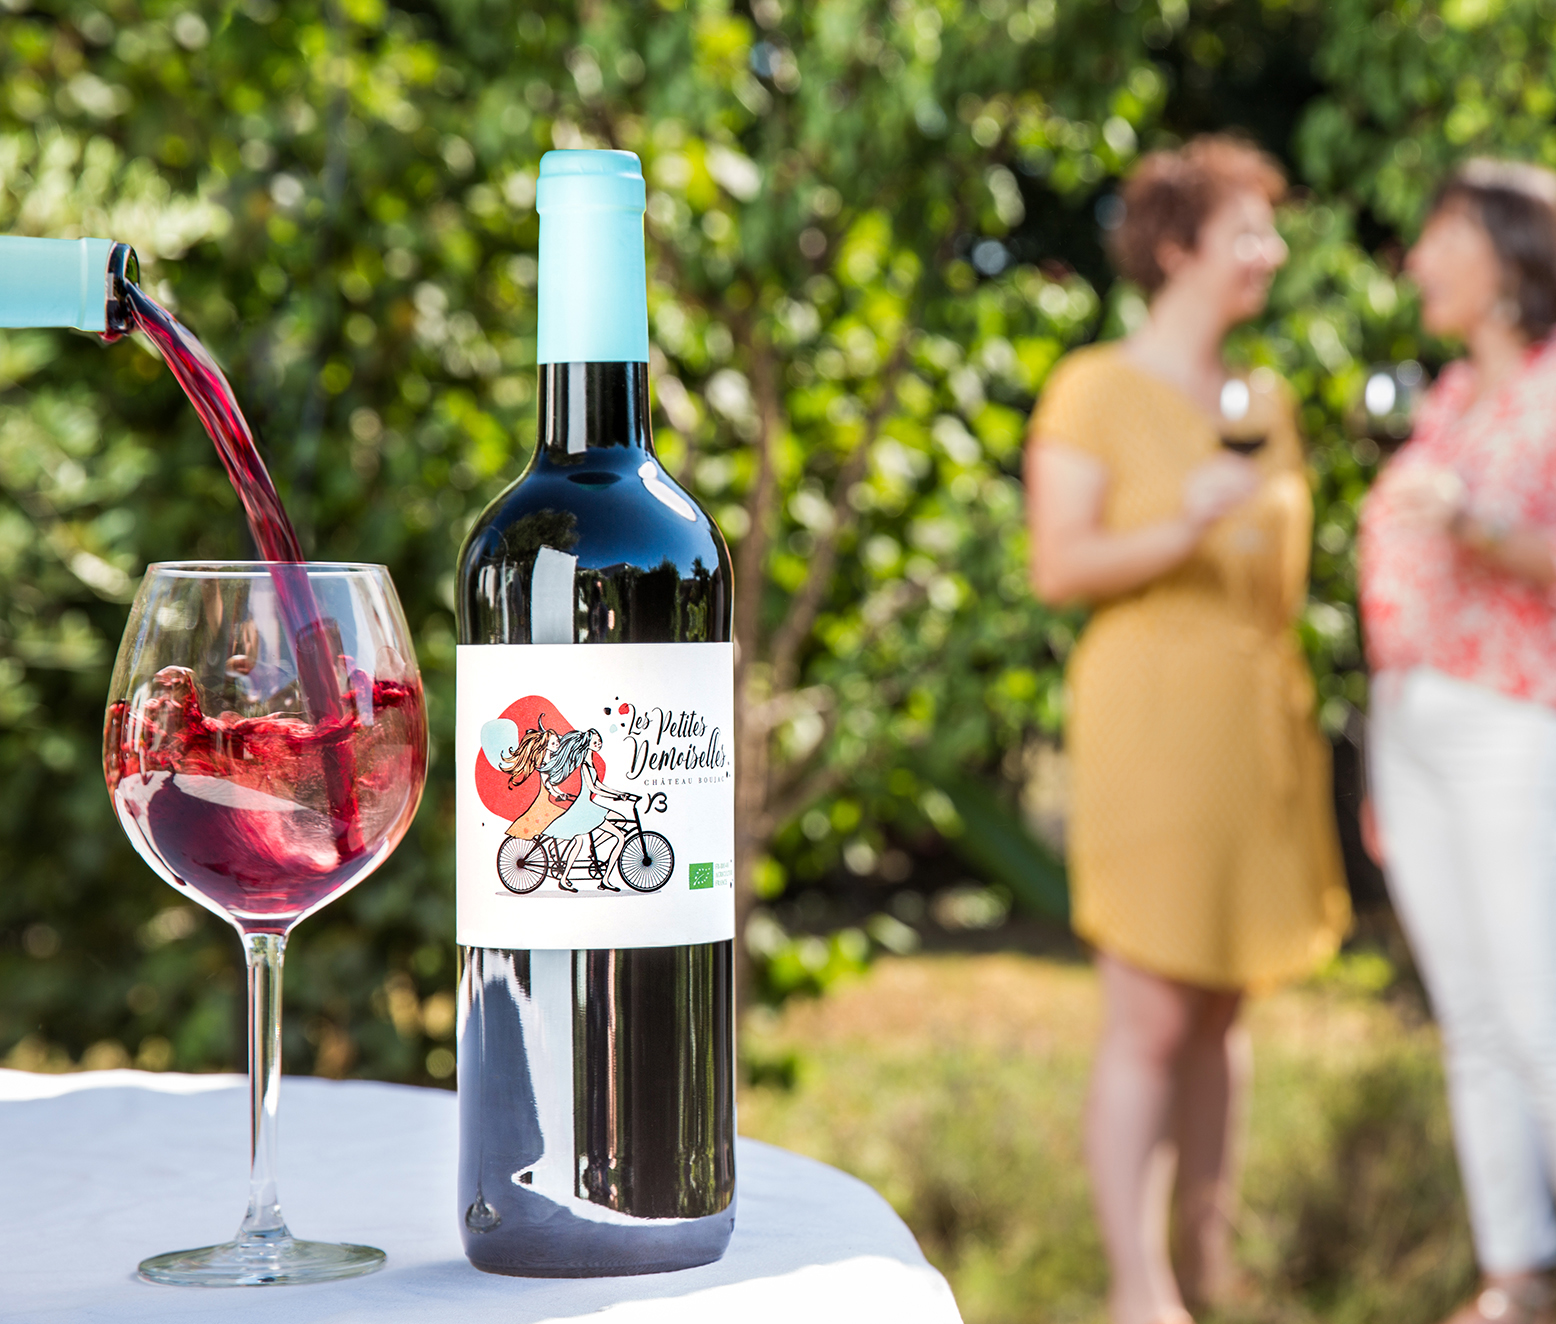 Verre de vin en train de se remplir avec le mouvement du vin dans le verre. Deux personnes discutent en arrière plan.